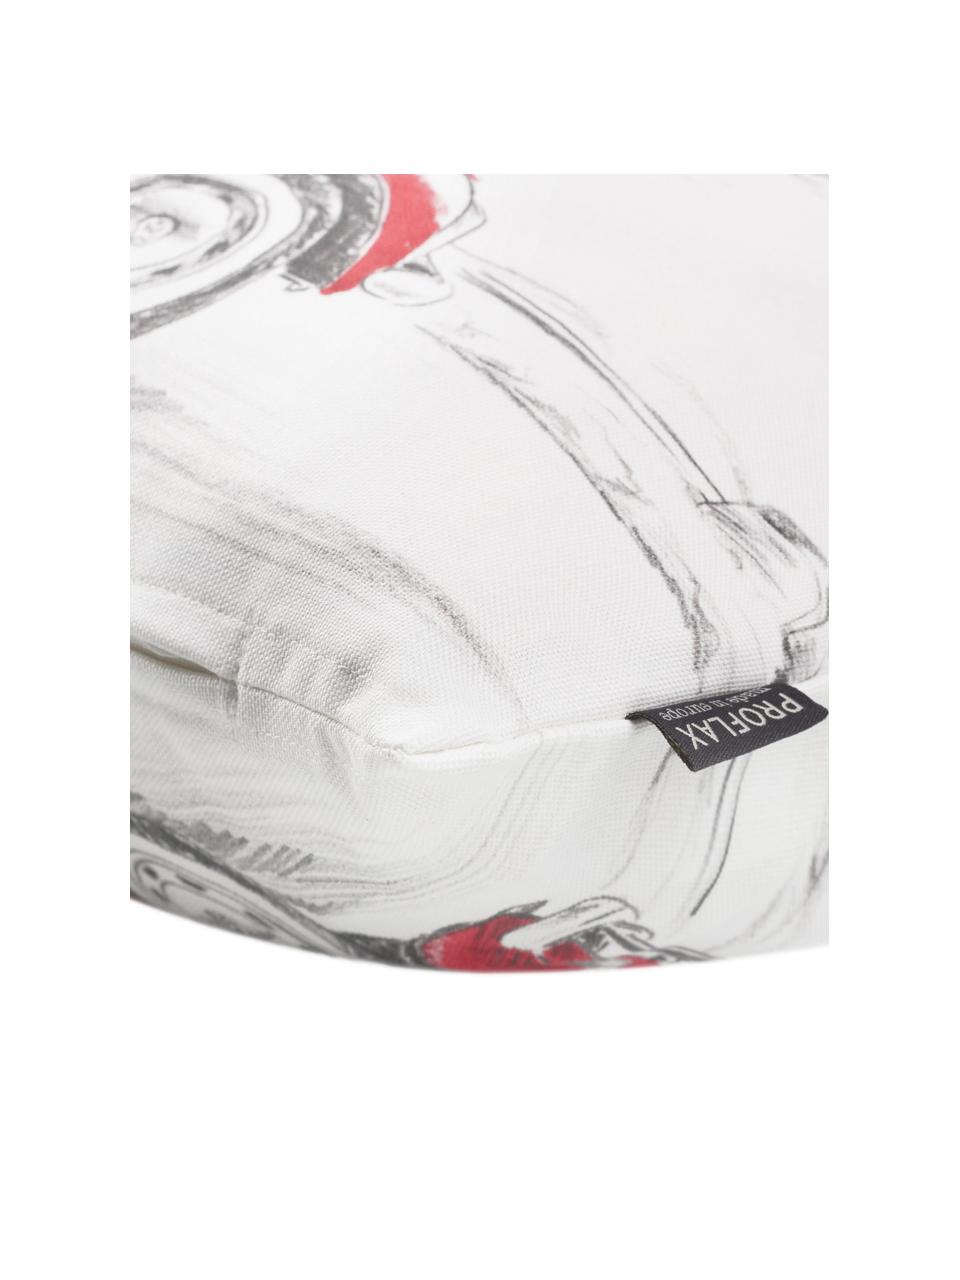 Kissenhülle Dodo mit Auto-Motiv in Weiß/Rot, 100% Baumwolle, Weiß, Rot, Grau, 30 x 50 cm